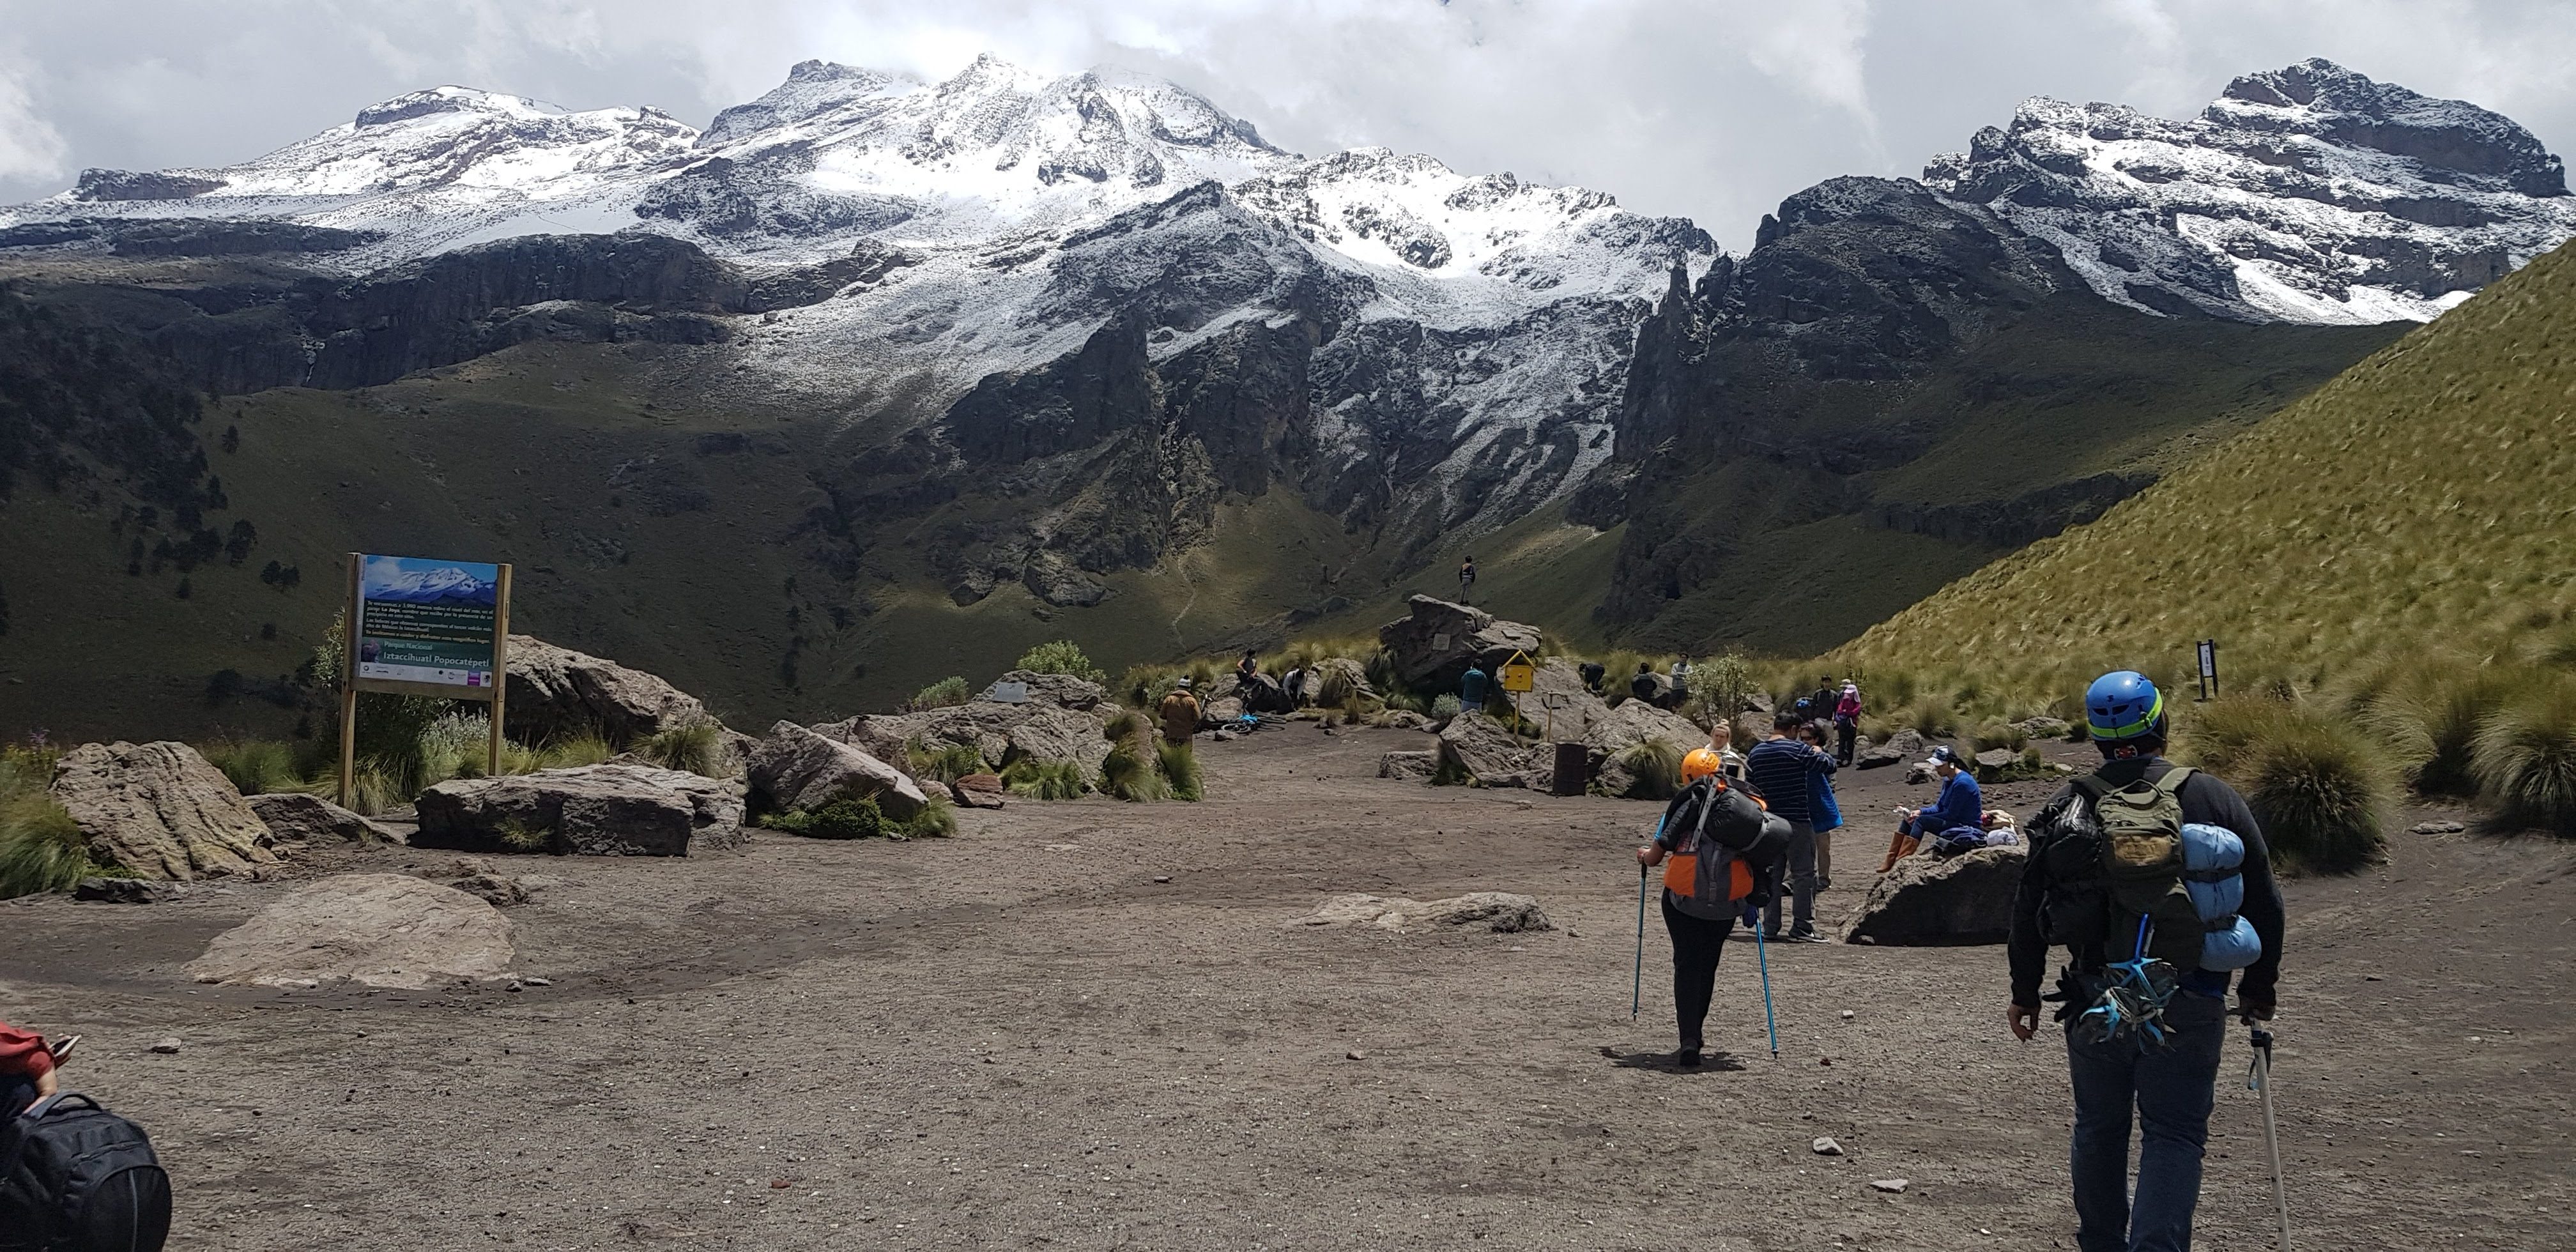 Qué es el hiking - fotografía en el parque nacional iztaccíhuatl-popocatépetl